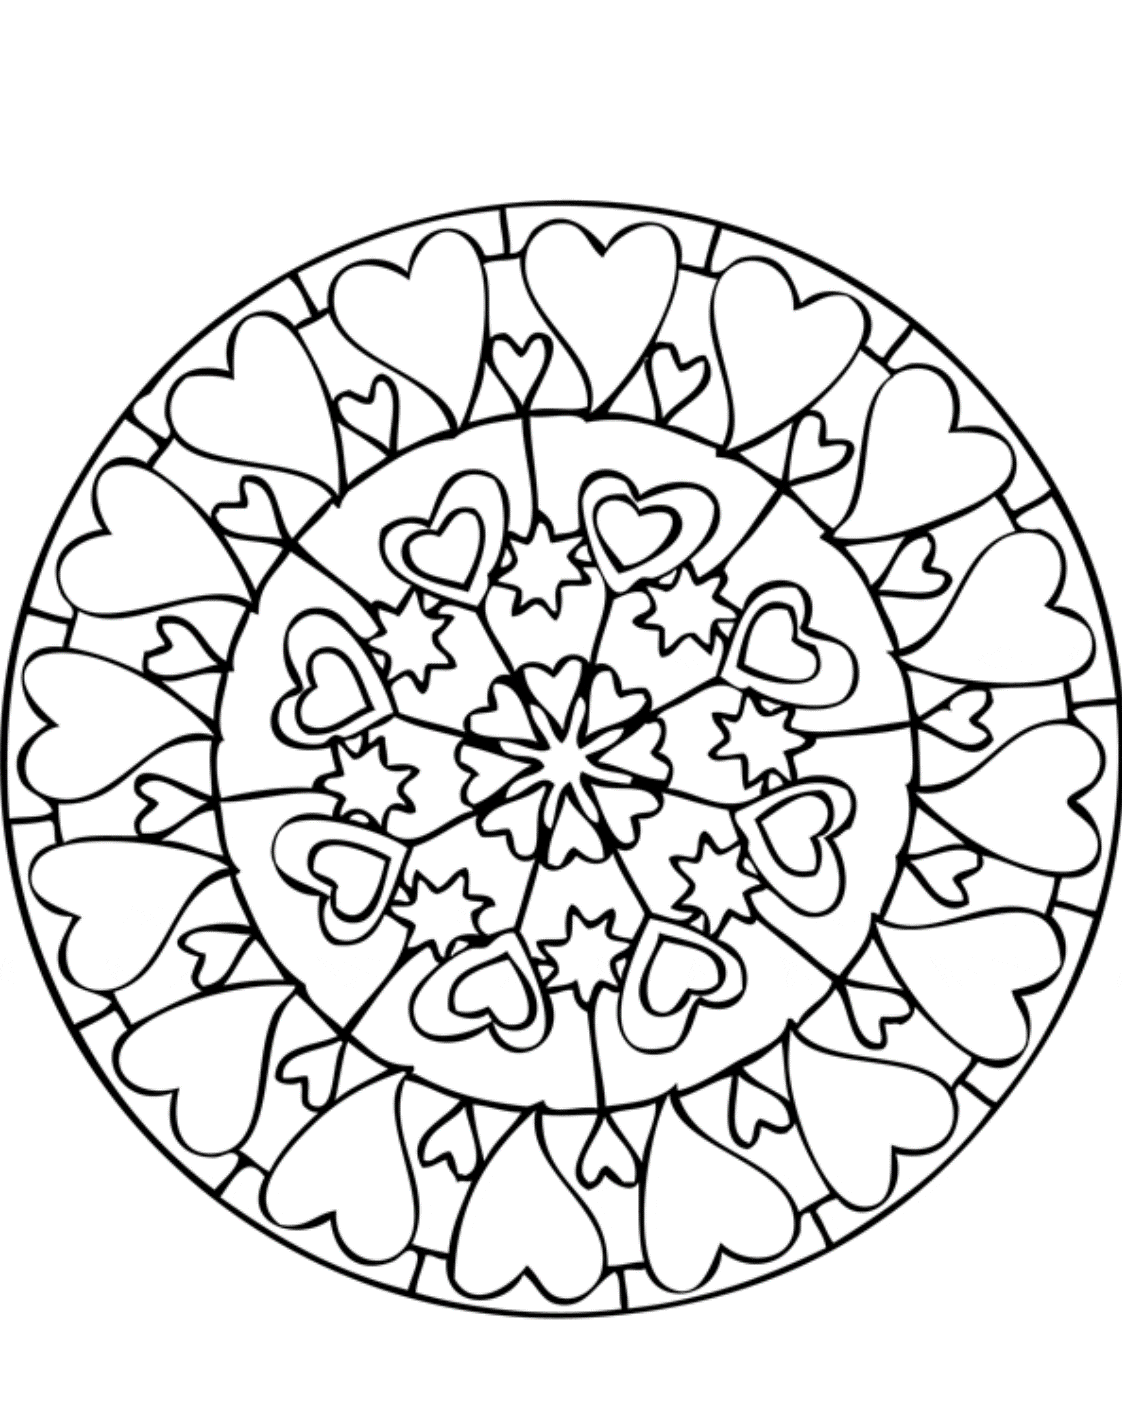 Hearts Mandalas Coloring Page